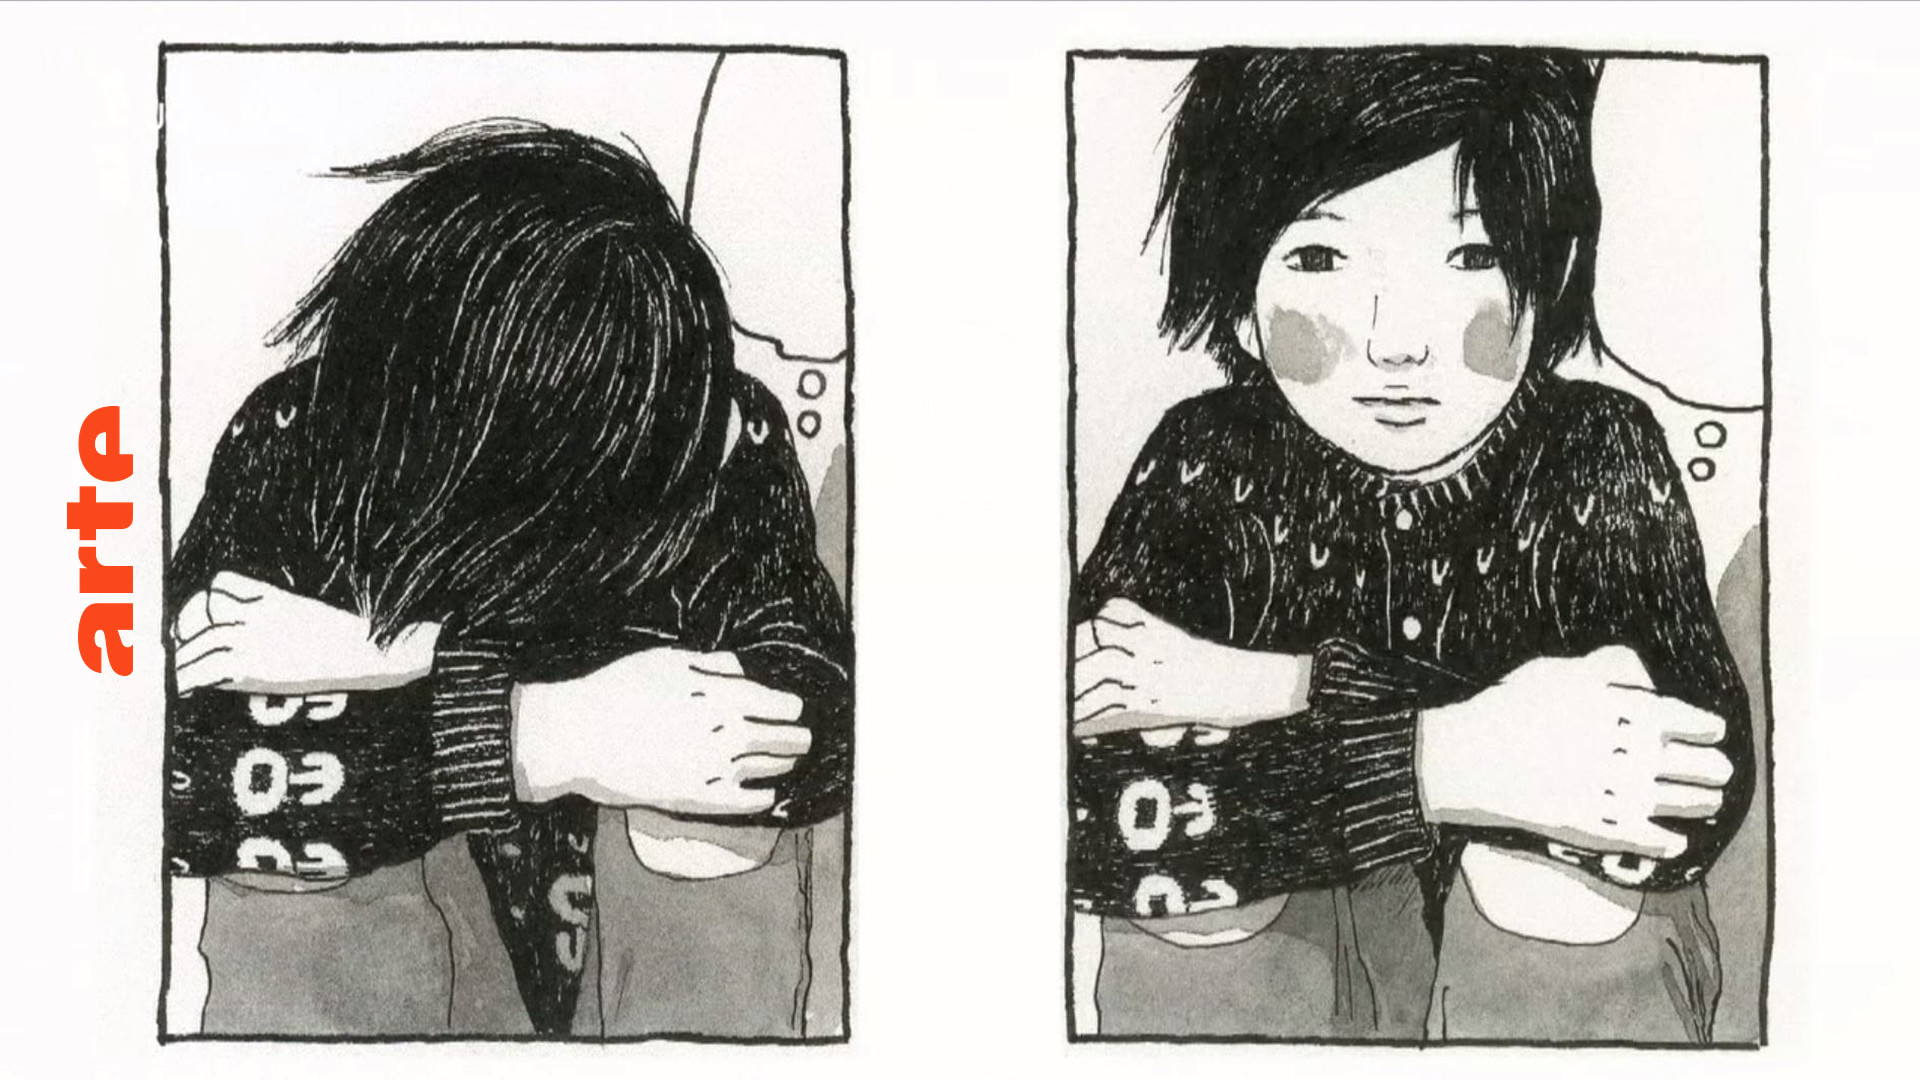 Comickunst: Taiyo Matsumoto verarbeitet seine Kindheit